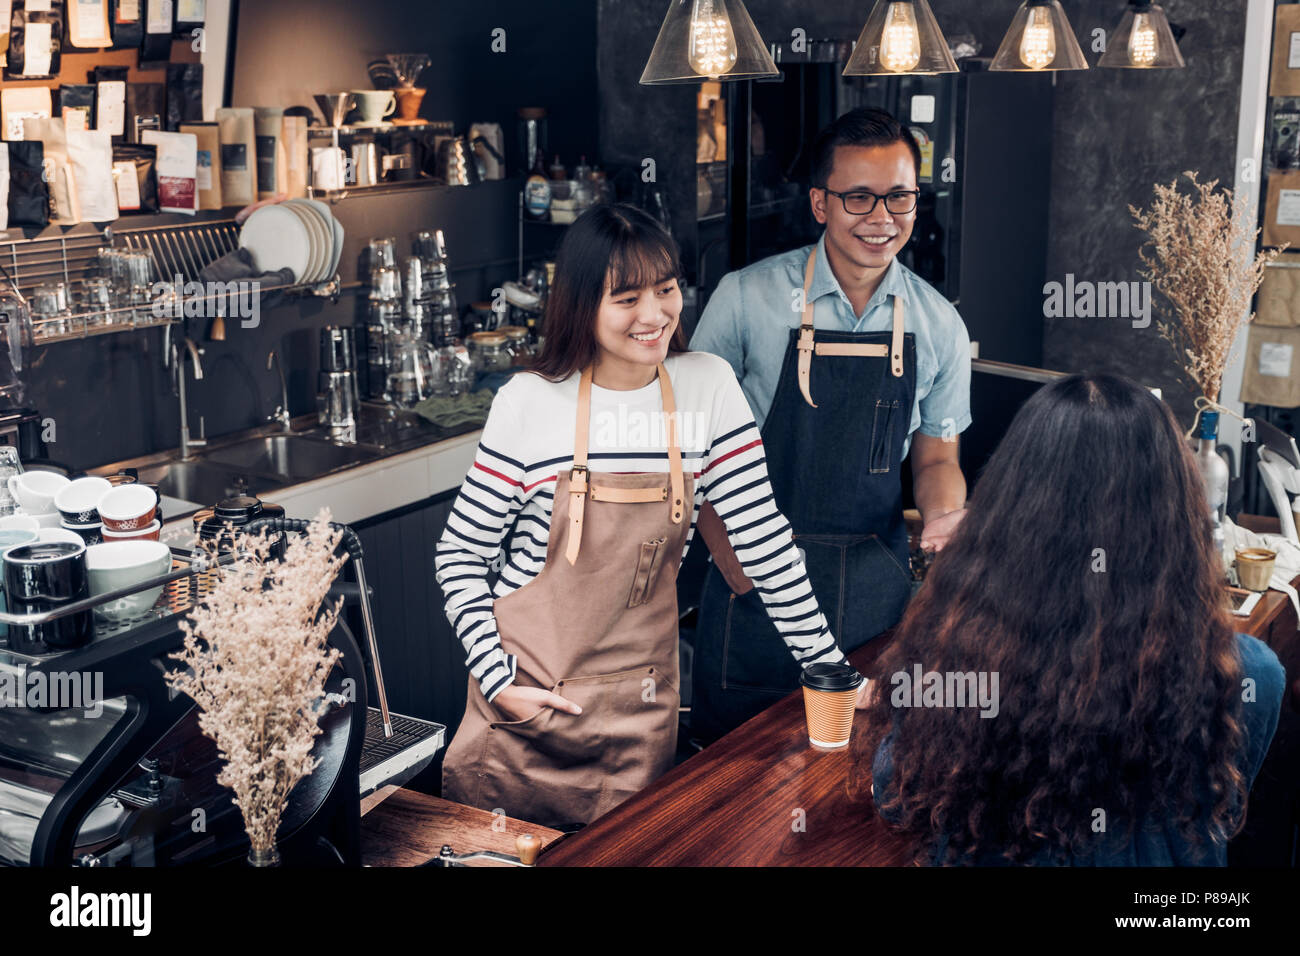 Asien barista Kellner und Kellnerinnen um von Kunden im Coffee Shop, zwei cafe Besitzer schreiben Drink an der Bar, Essen und Trinken Business Con Stockfoto